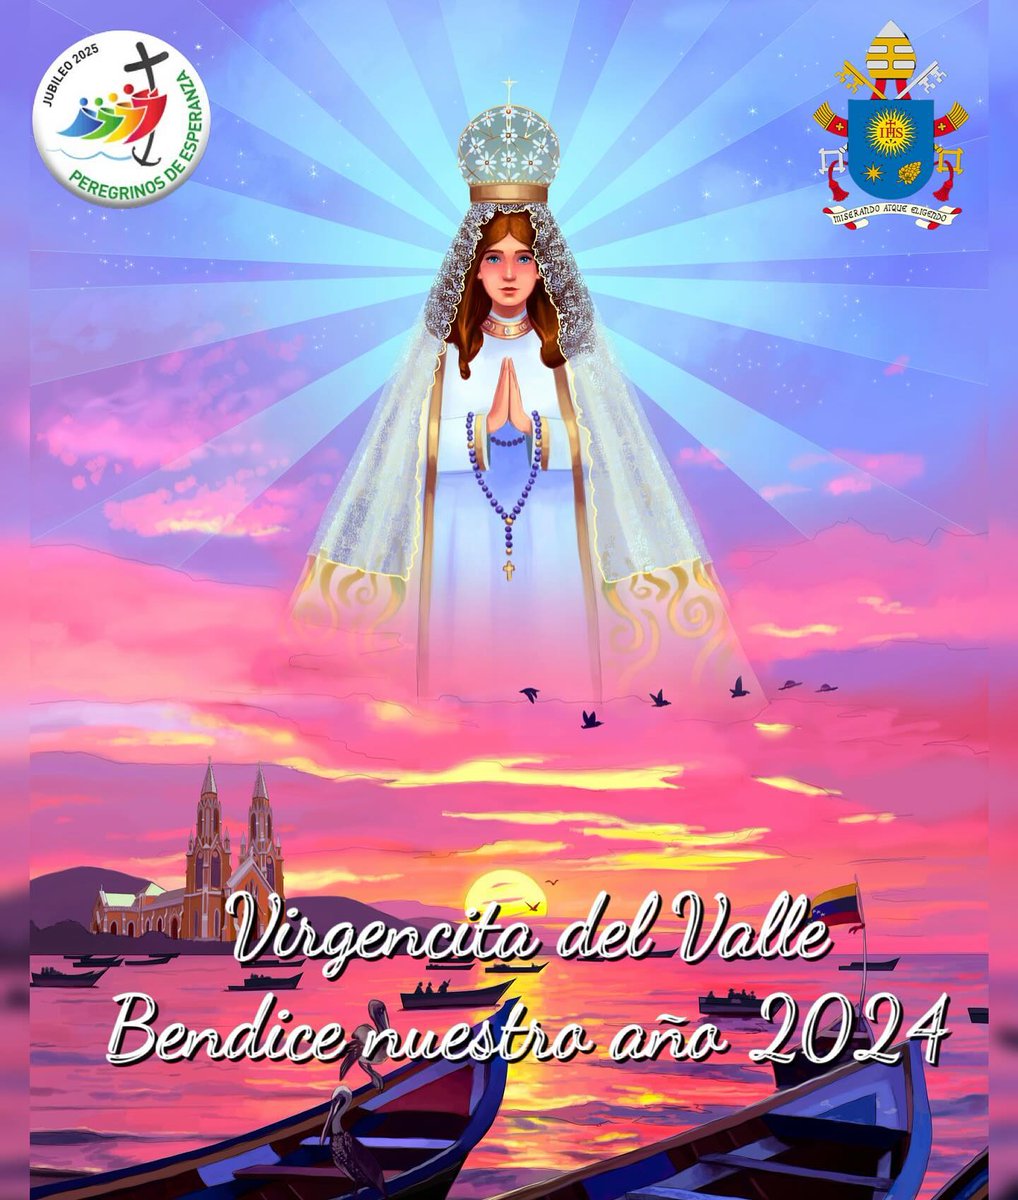 Iniciamos el año nuevo 2024 dedicado a la oración previo al #Jubileo2025

Encomendamos a Nuestra Virgencita del Valle este año 2024 y pidámosle abundantes bendiciones. AMÉN

#VirgendelValle #VirgendelValle2024 #PeregrinosdelaEsperanza